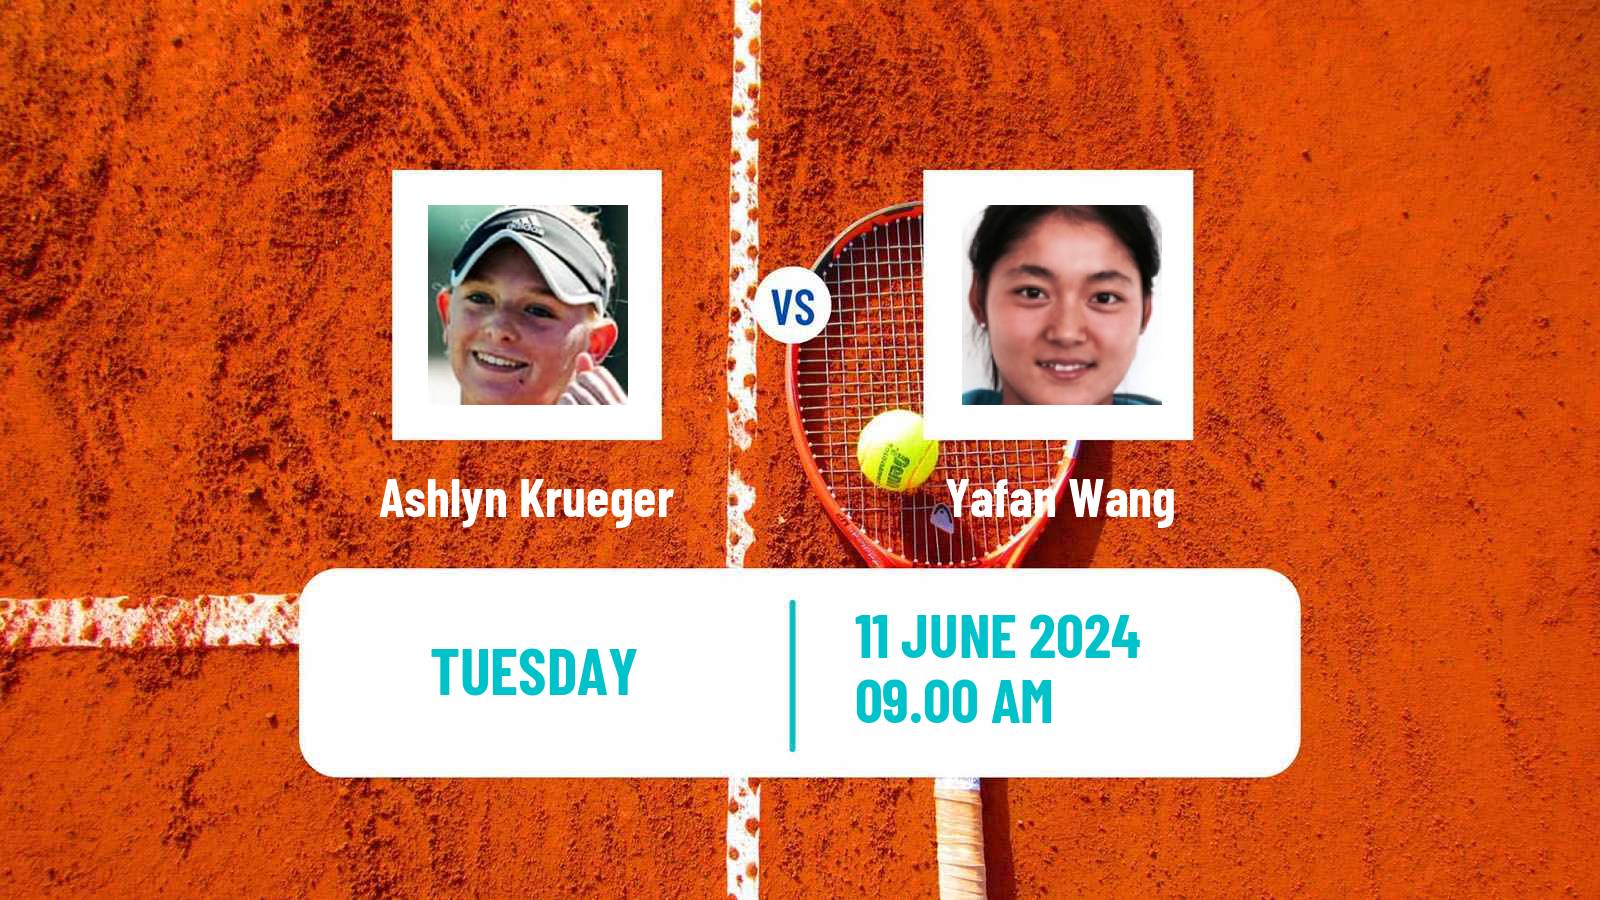 Tennis WTA Nottingham Ashlyn Krueger - Yafan Wang